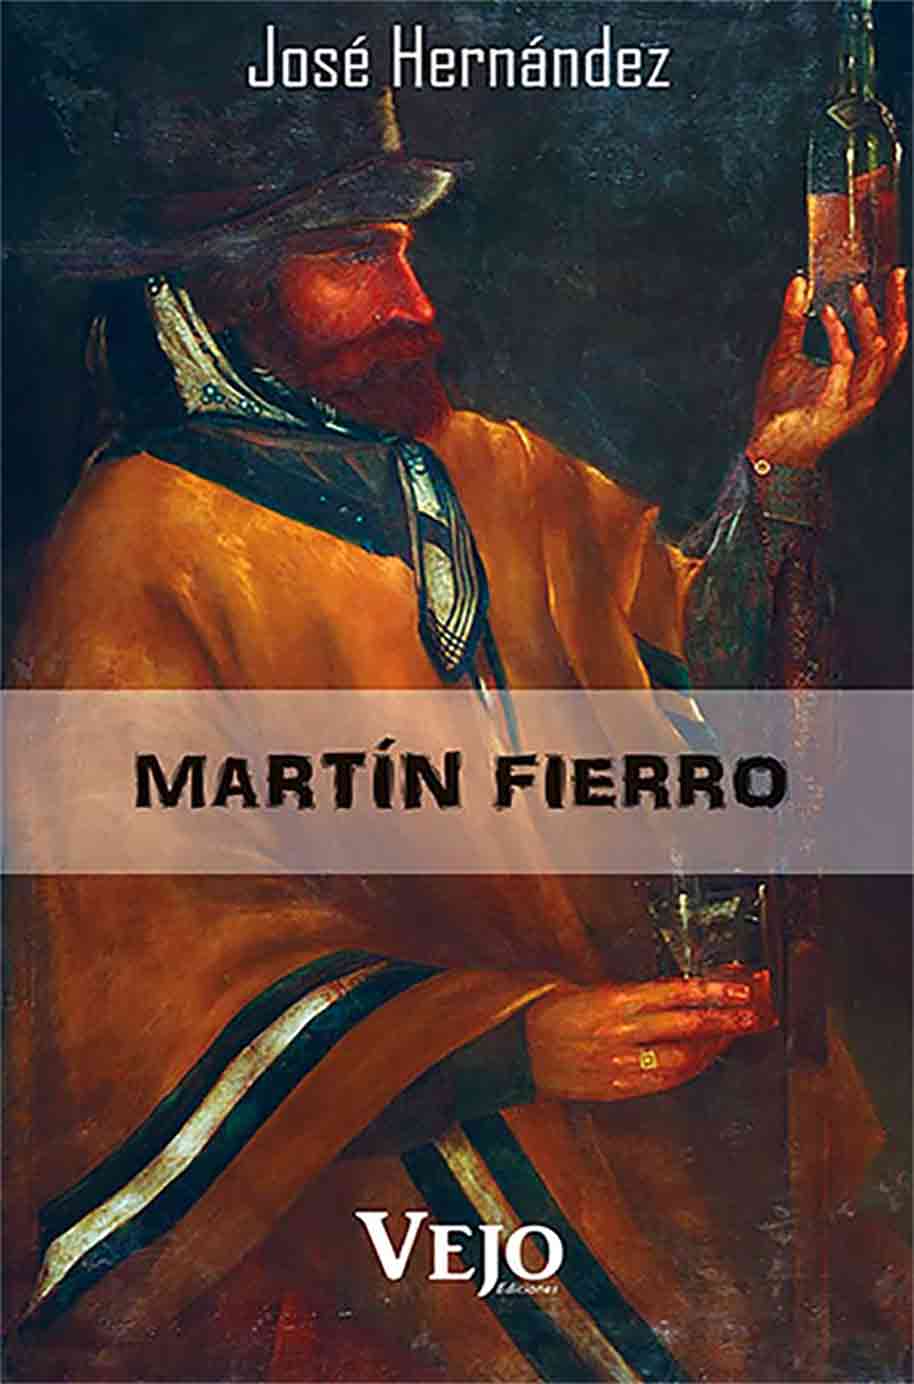 Tapa del libro Martín Fierro de José Hernández